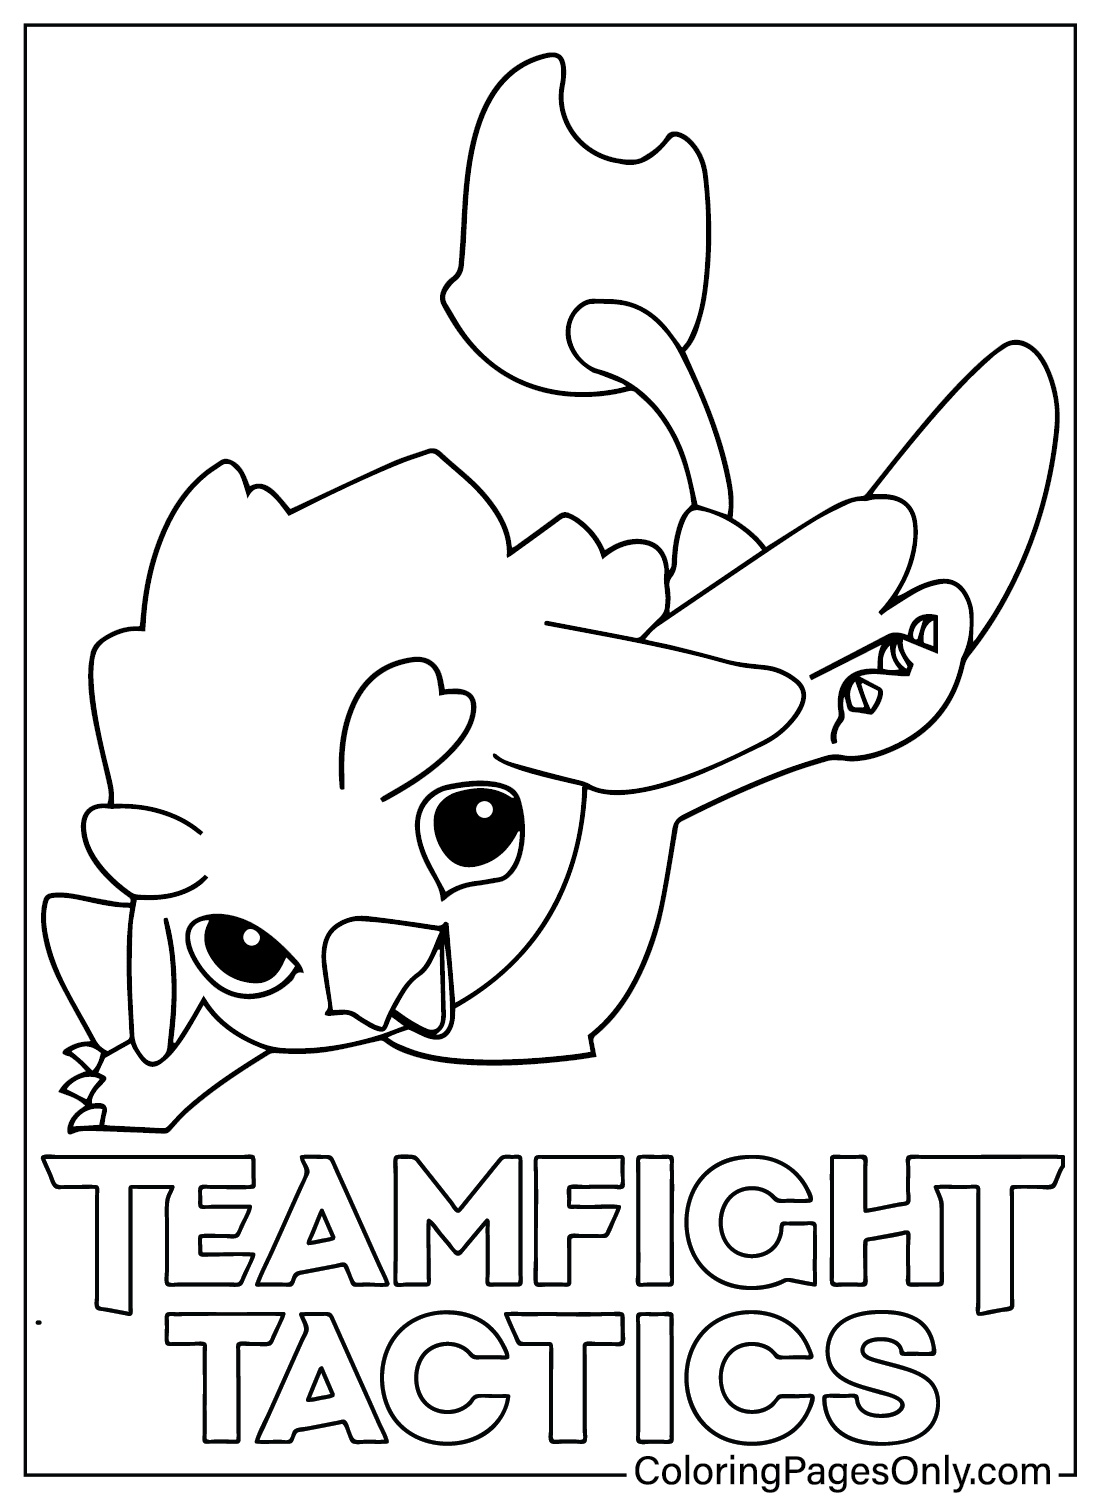 Руководство для начинающих по раскраске Teamfight Tactics от Teamfight Tactics